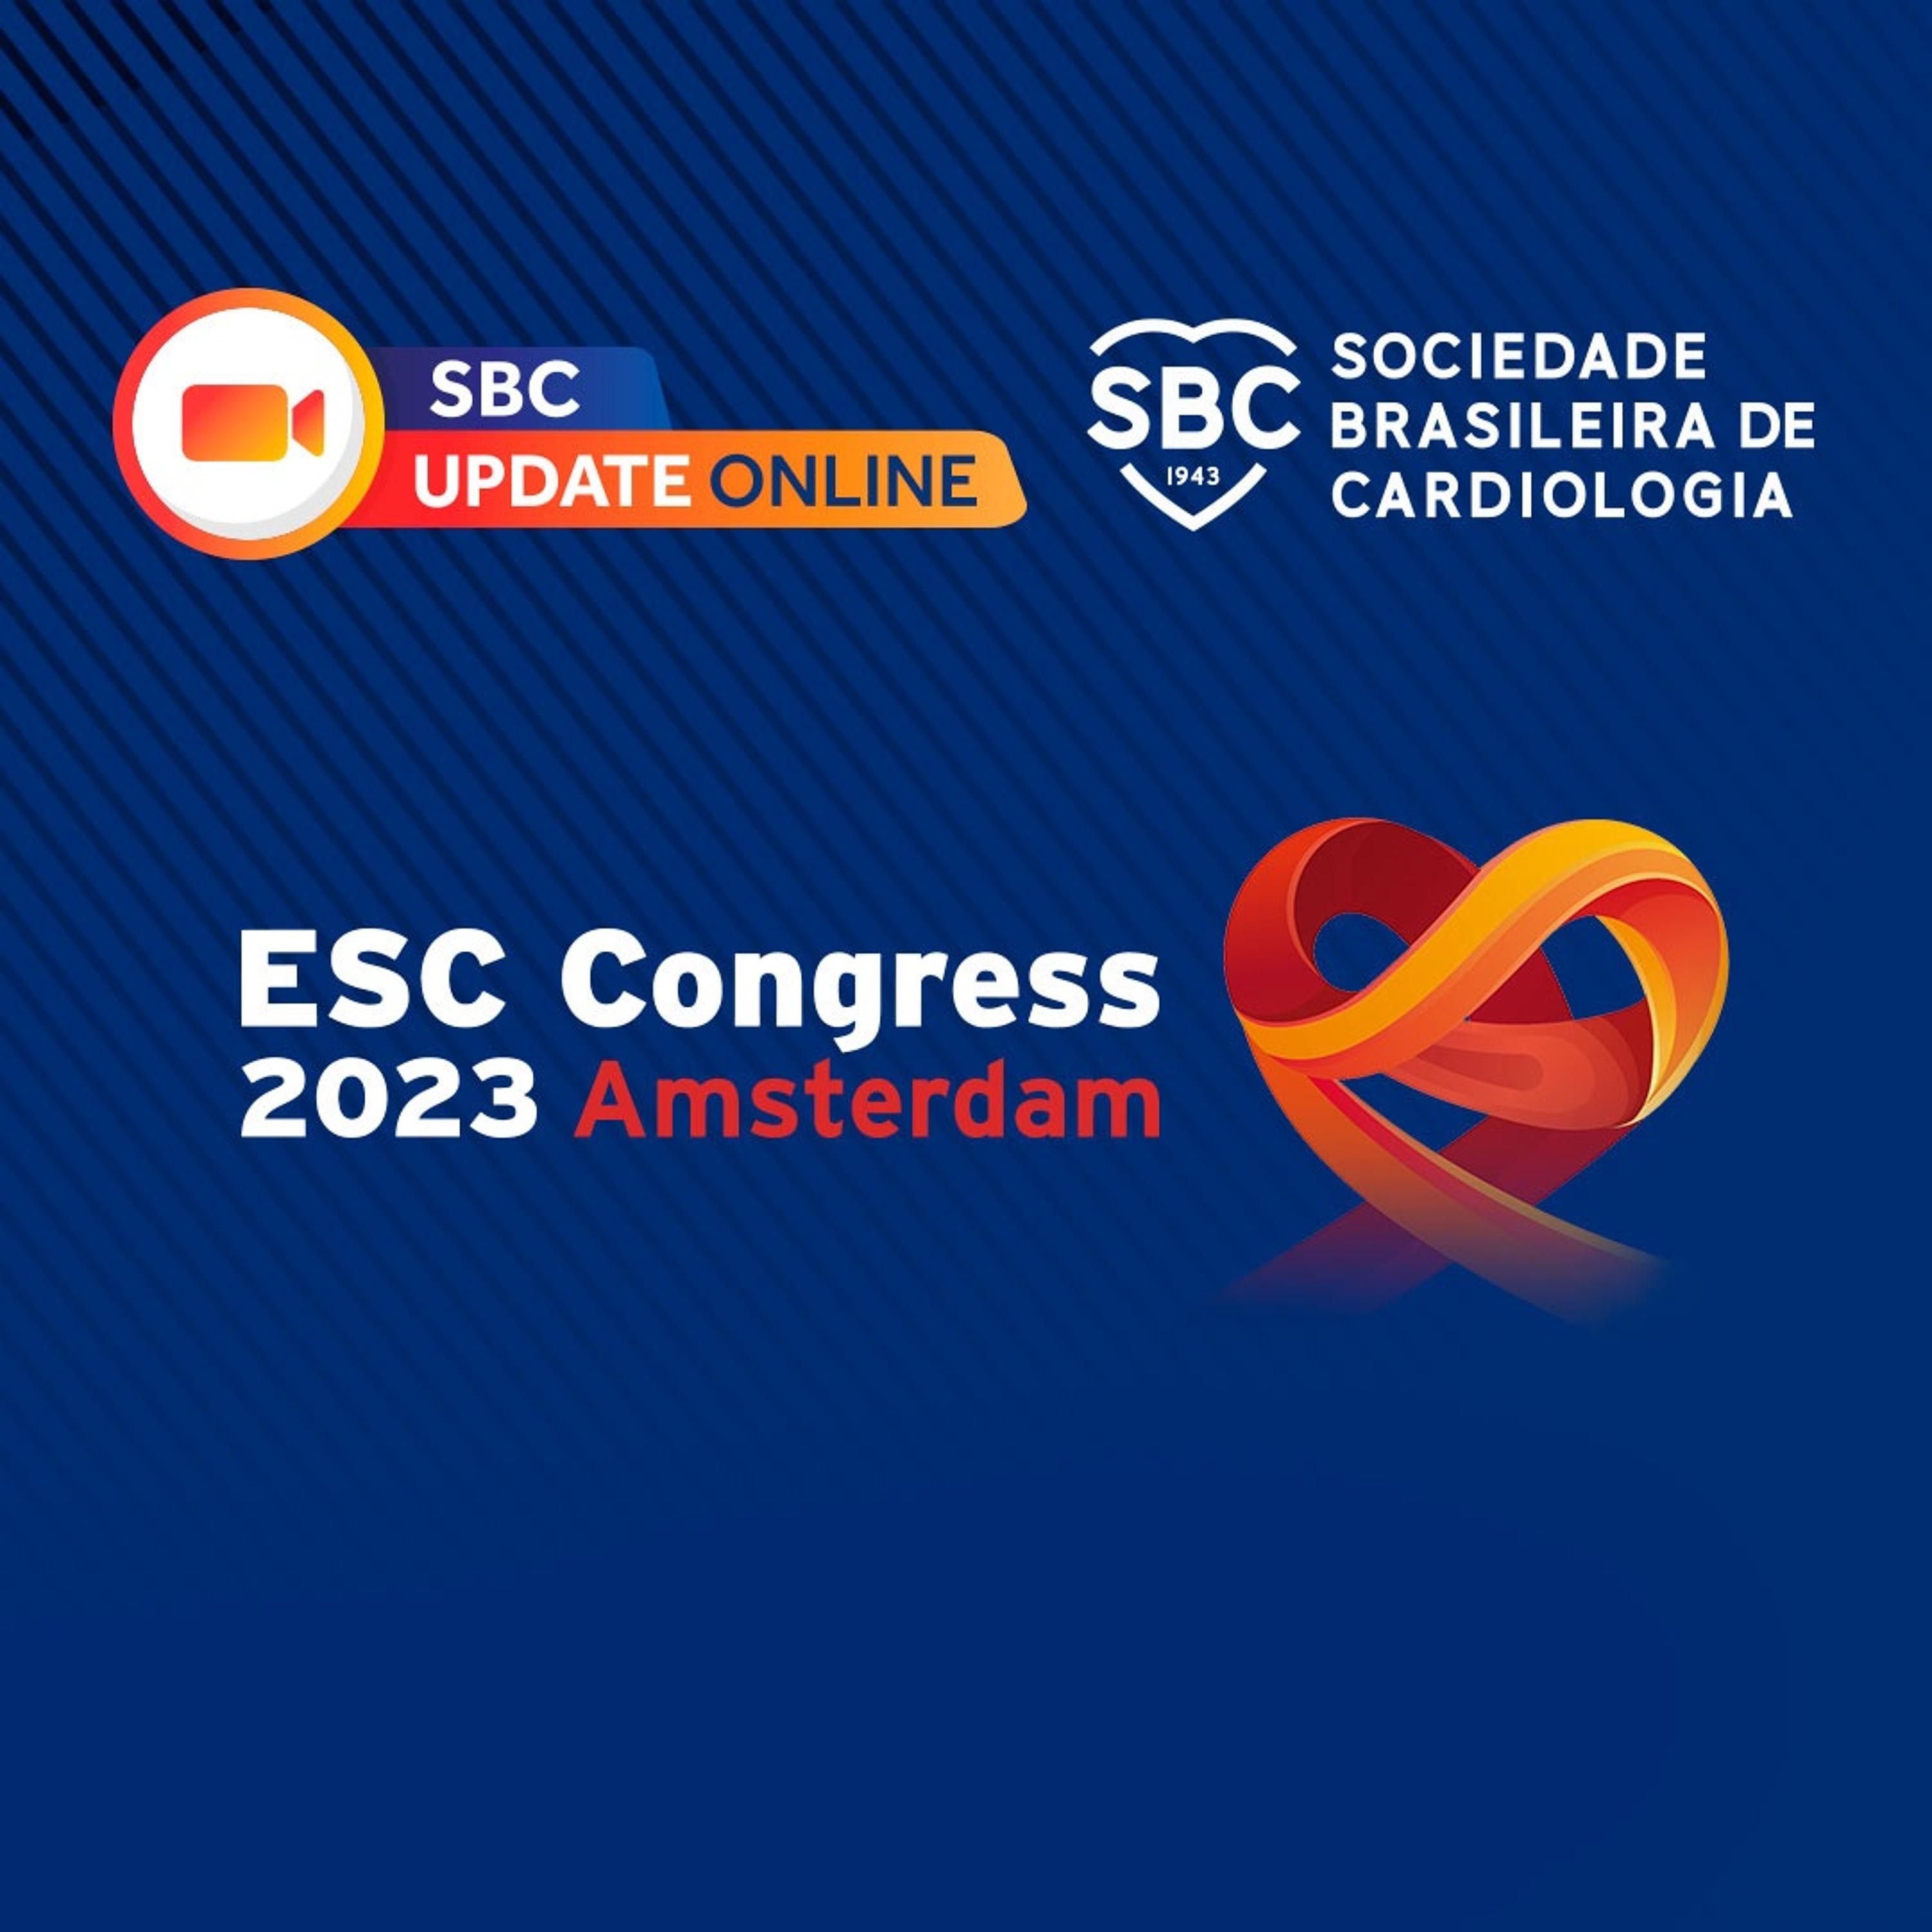 Ouça a live realizada no terceiro dia do congresso europeu de cardiologia 2023, trazendo as principais novidades do momento na cardiologia.